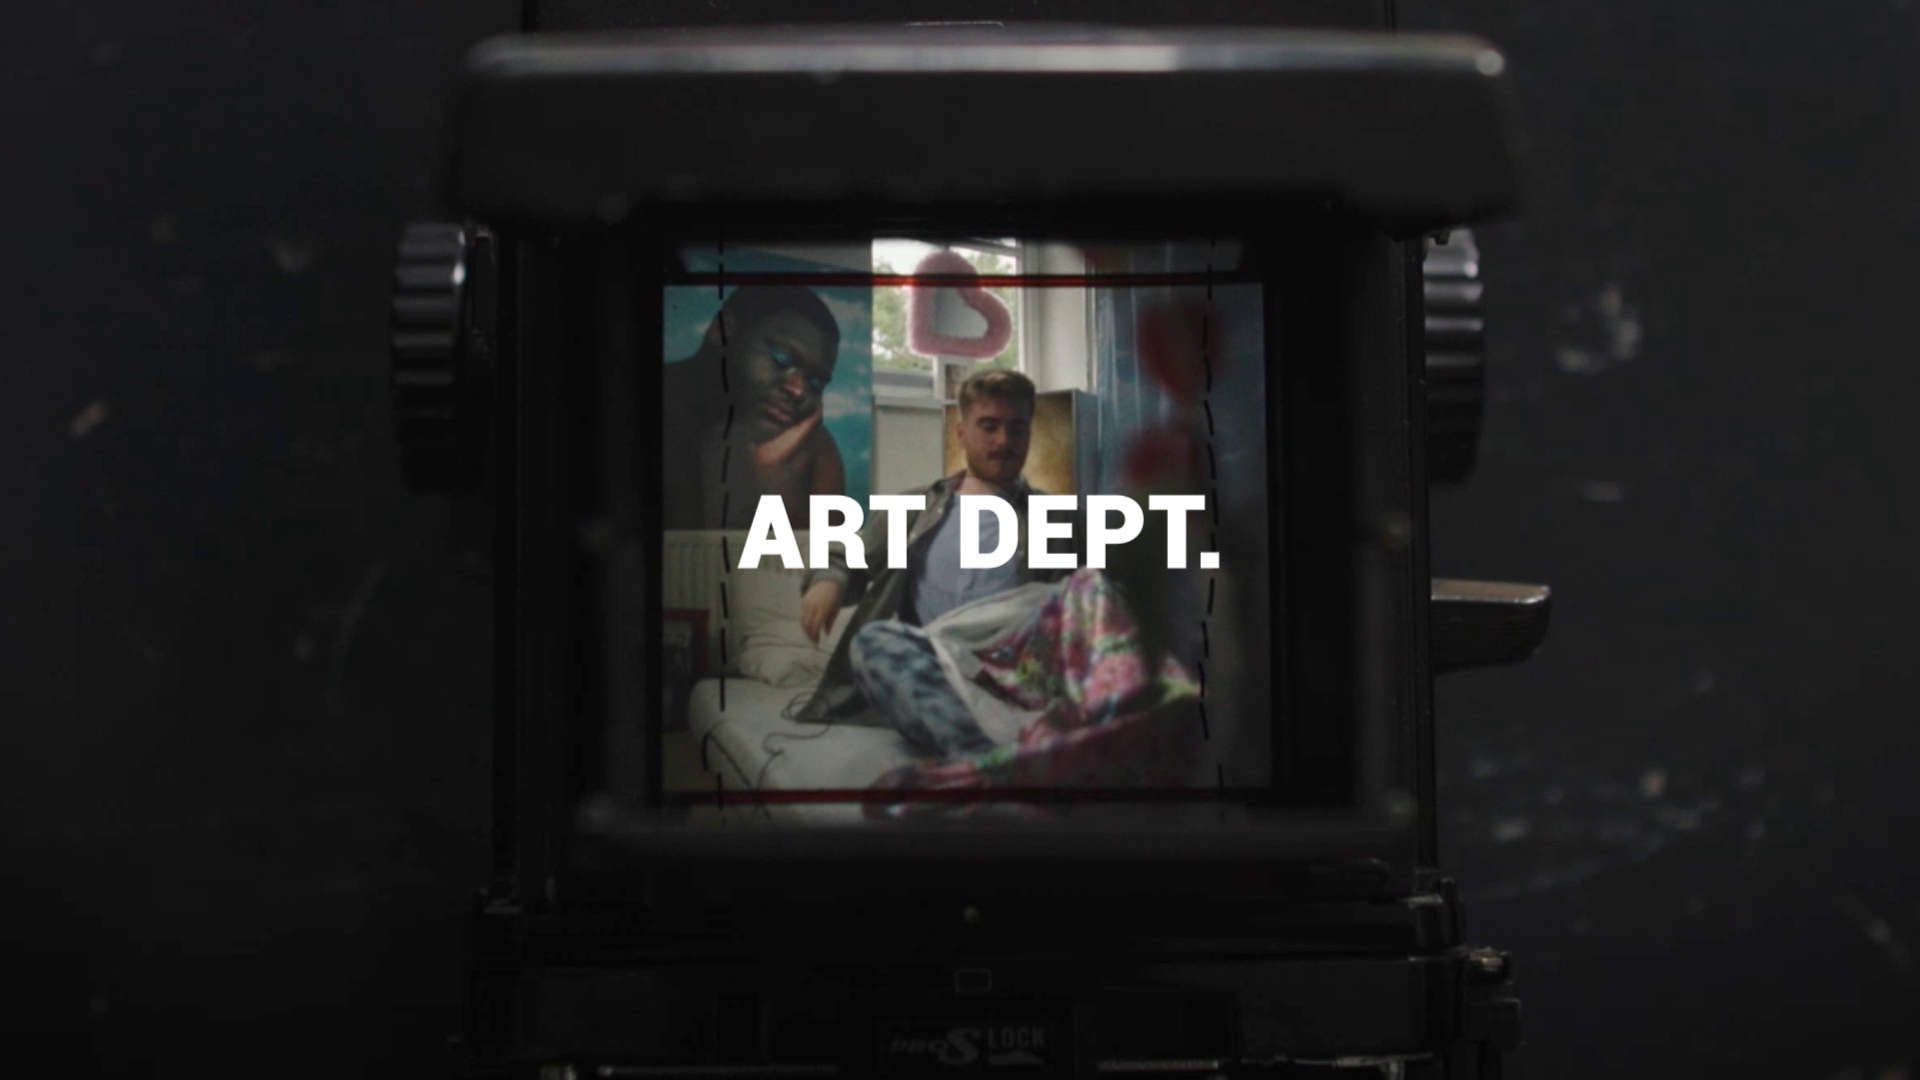 Meld je nu aan voor Art Dept.: Werkervaringsplekken voor jonge filmmakers